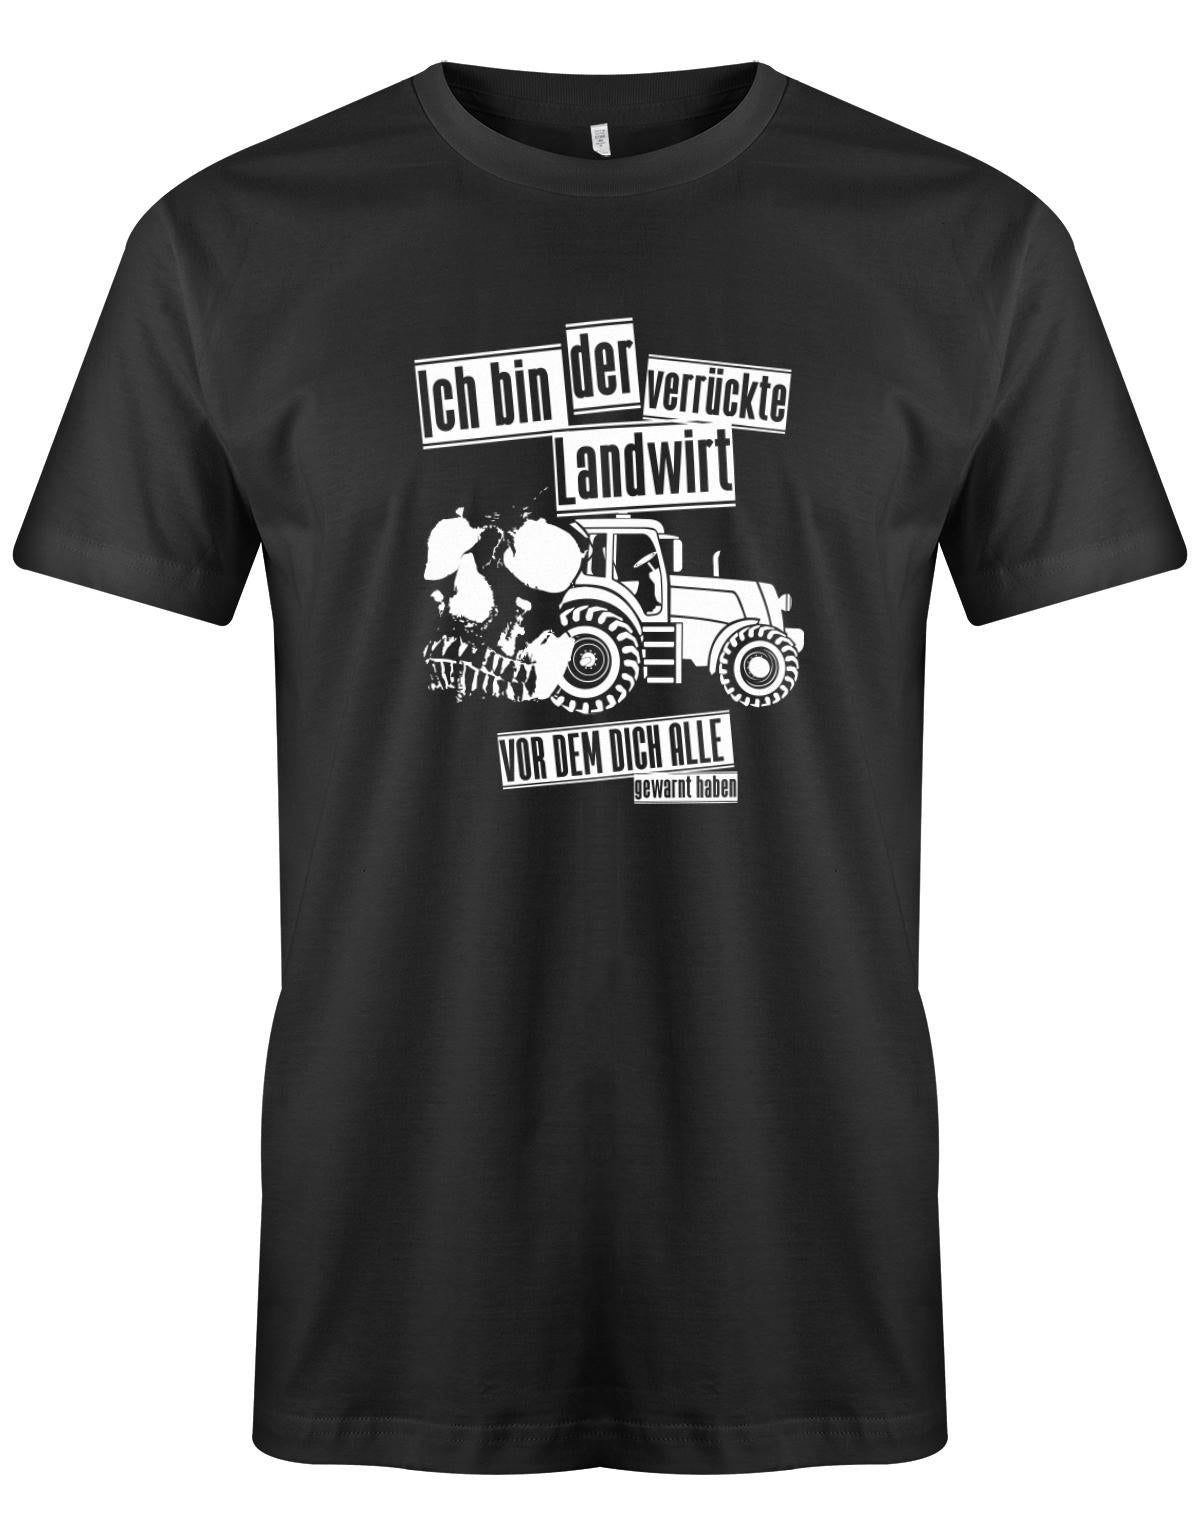 Landwirtschaft Shirt Männer - Ich bin der verrückte Landwirt vor dem dich alle gewarnt haben. SChwarz